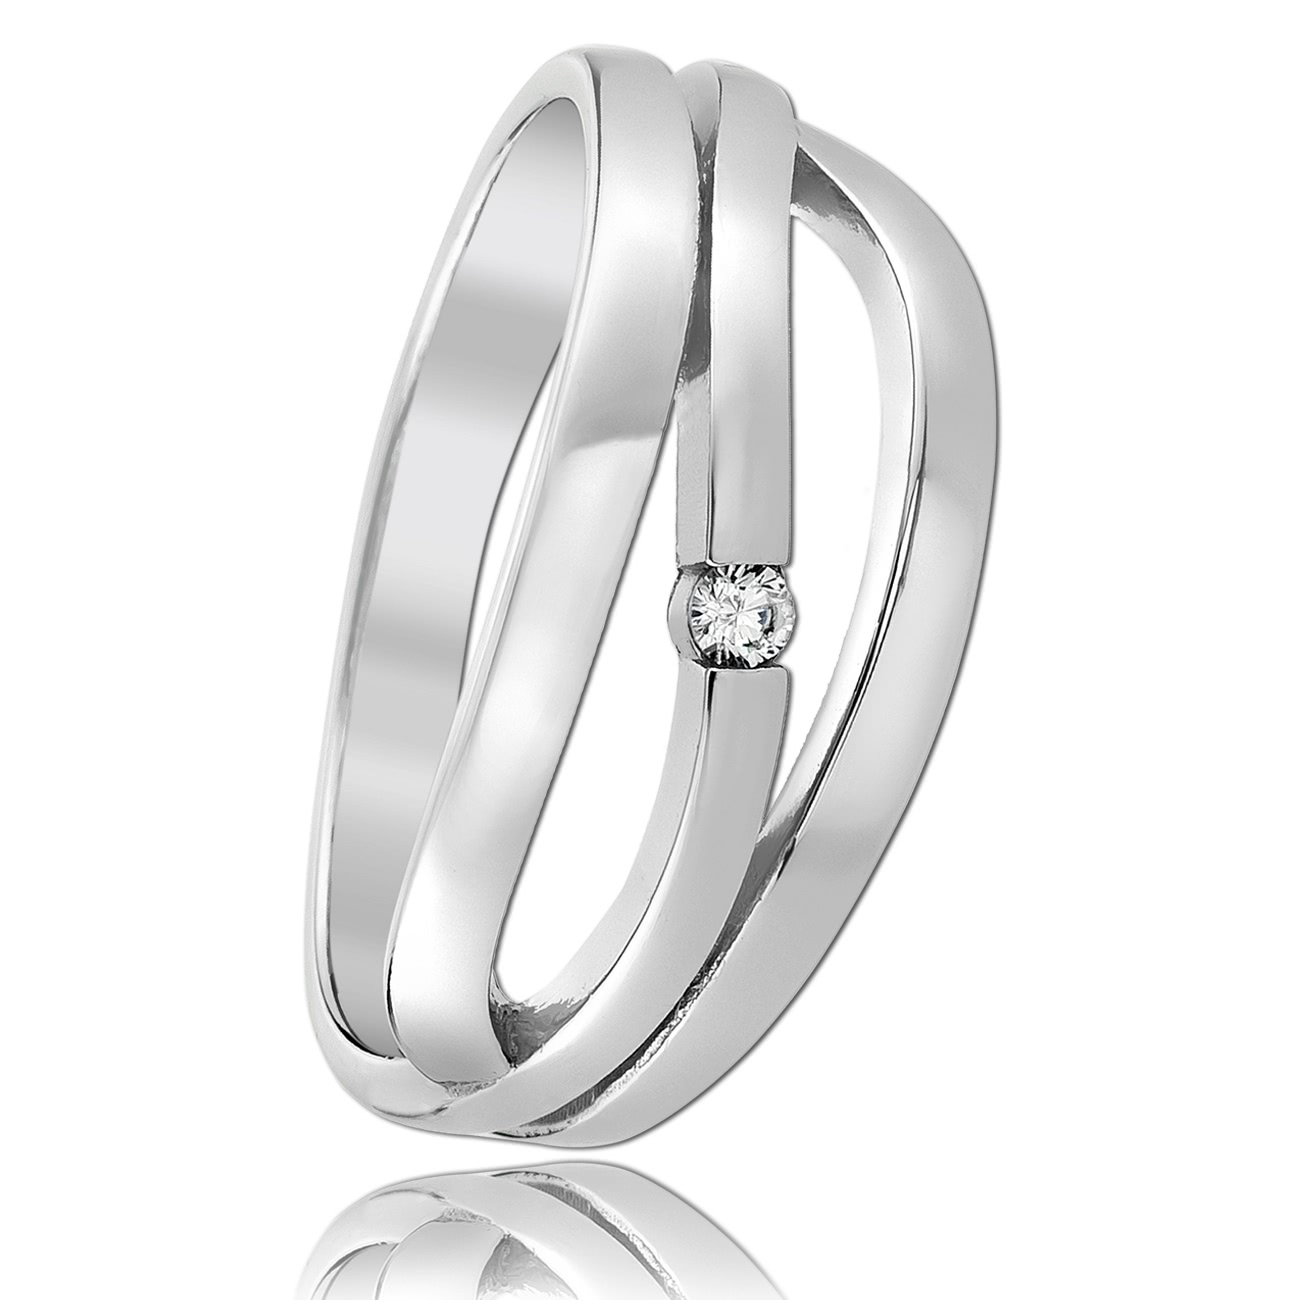 Balia Damen Fashion Ring aus 925 Silber Zirkonia weiß Gr.58 BAR025W58